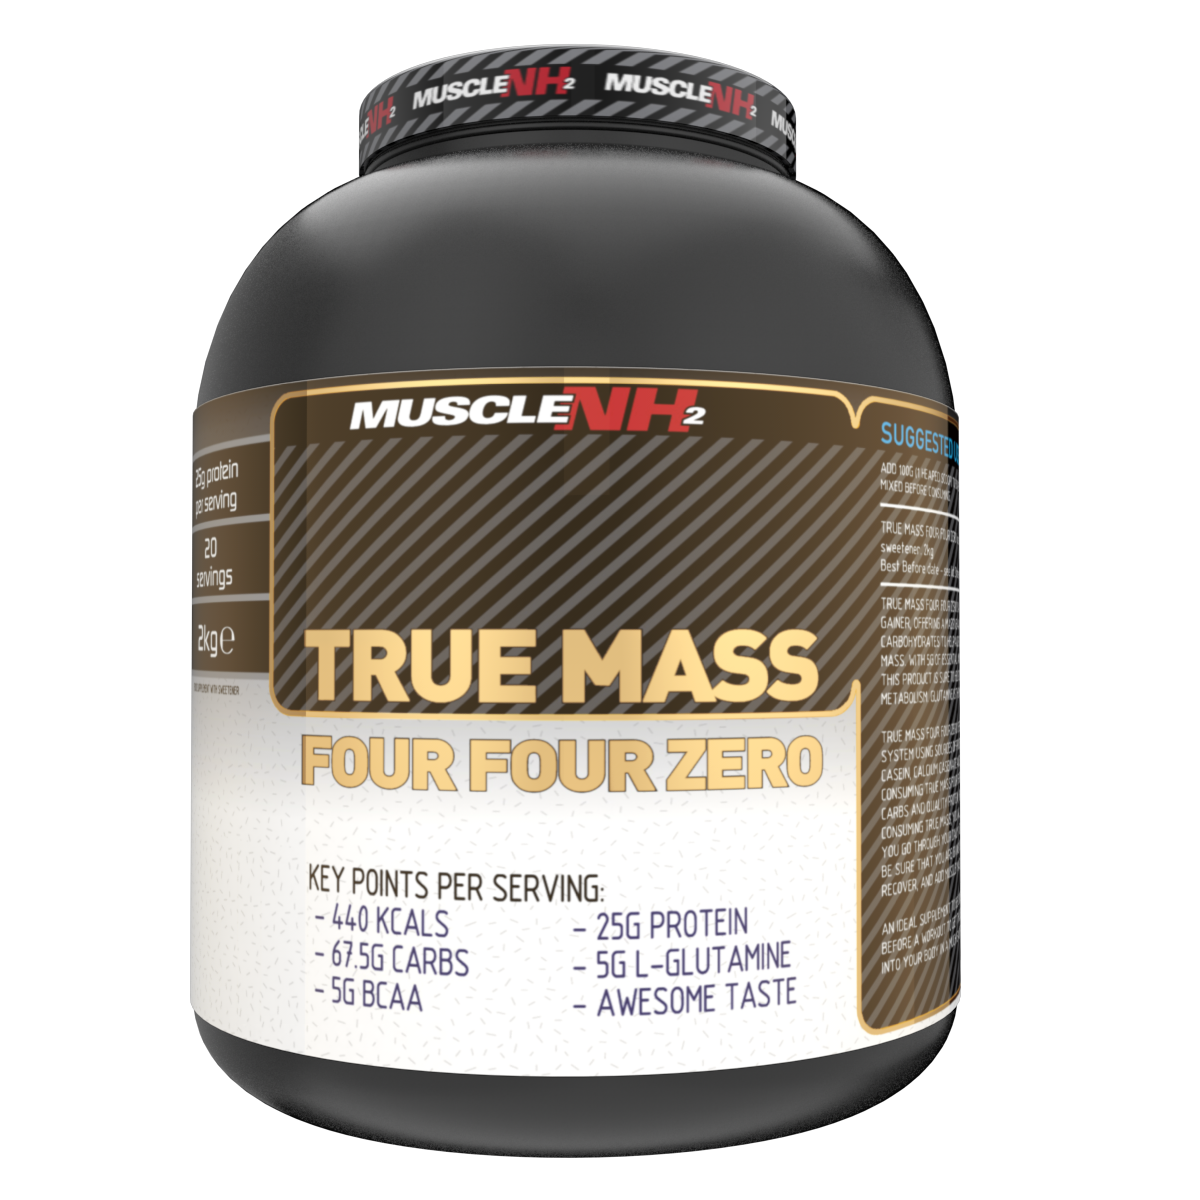 MuscleNH2 True Mass 40 Mass Gainer